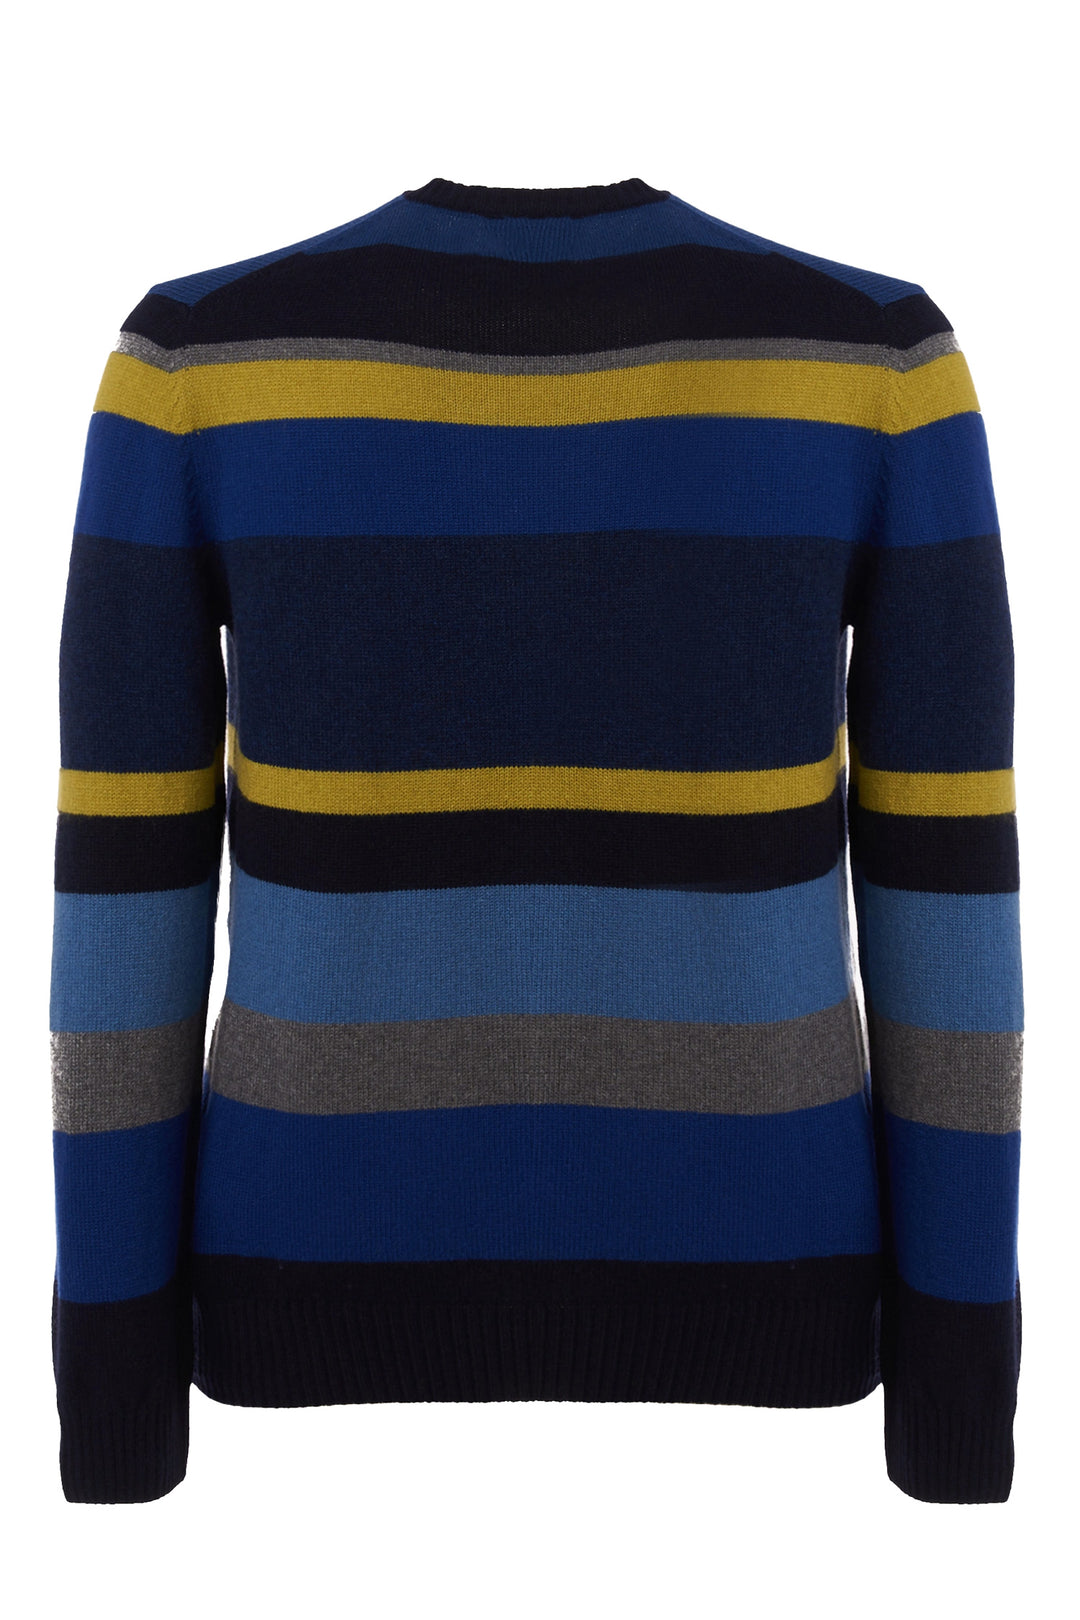 GALLO Pull girocollo lana, viscosa e cashmere blu righe multicolor - Mancinelli 1954